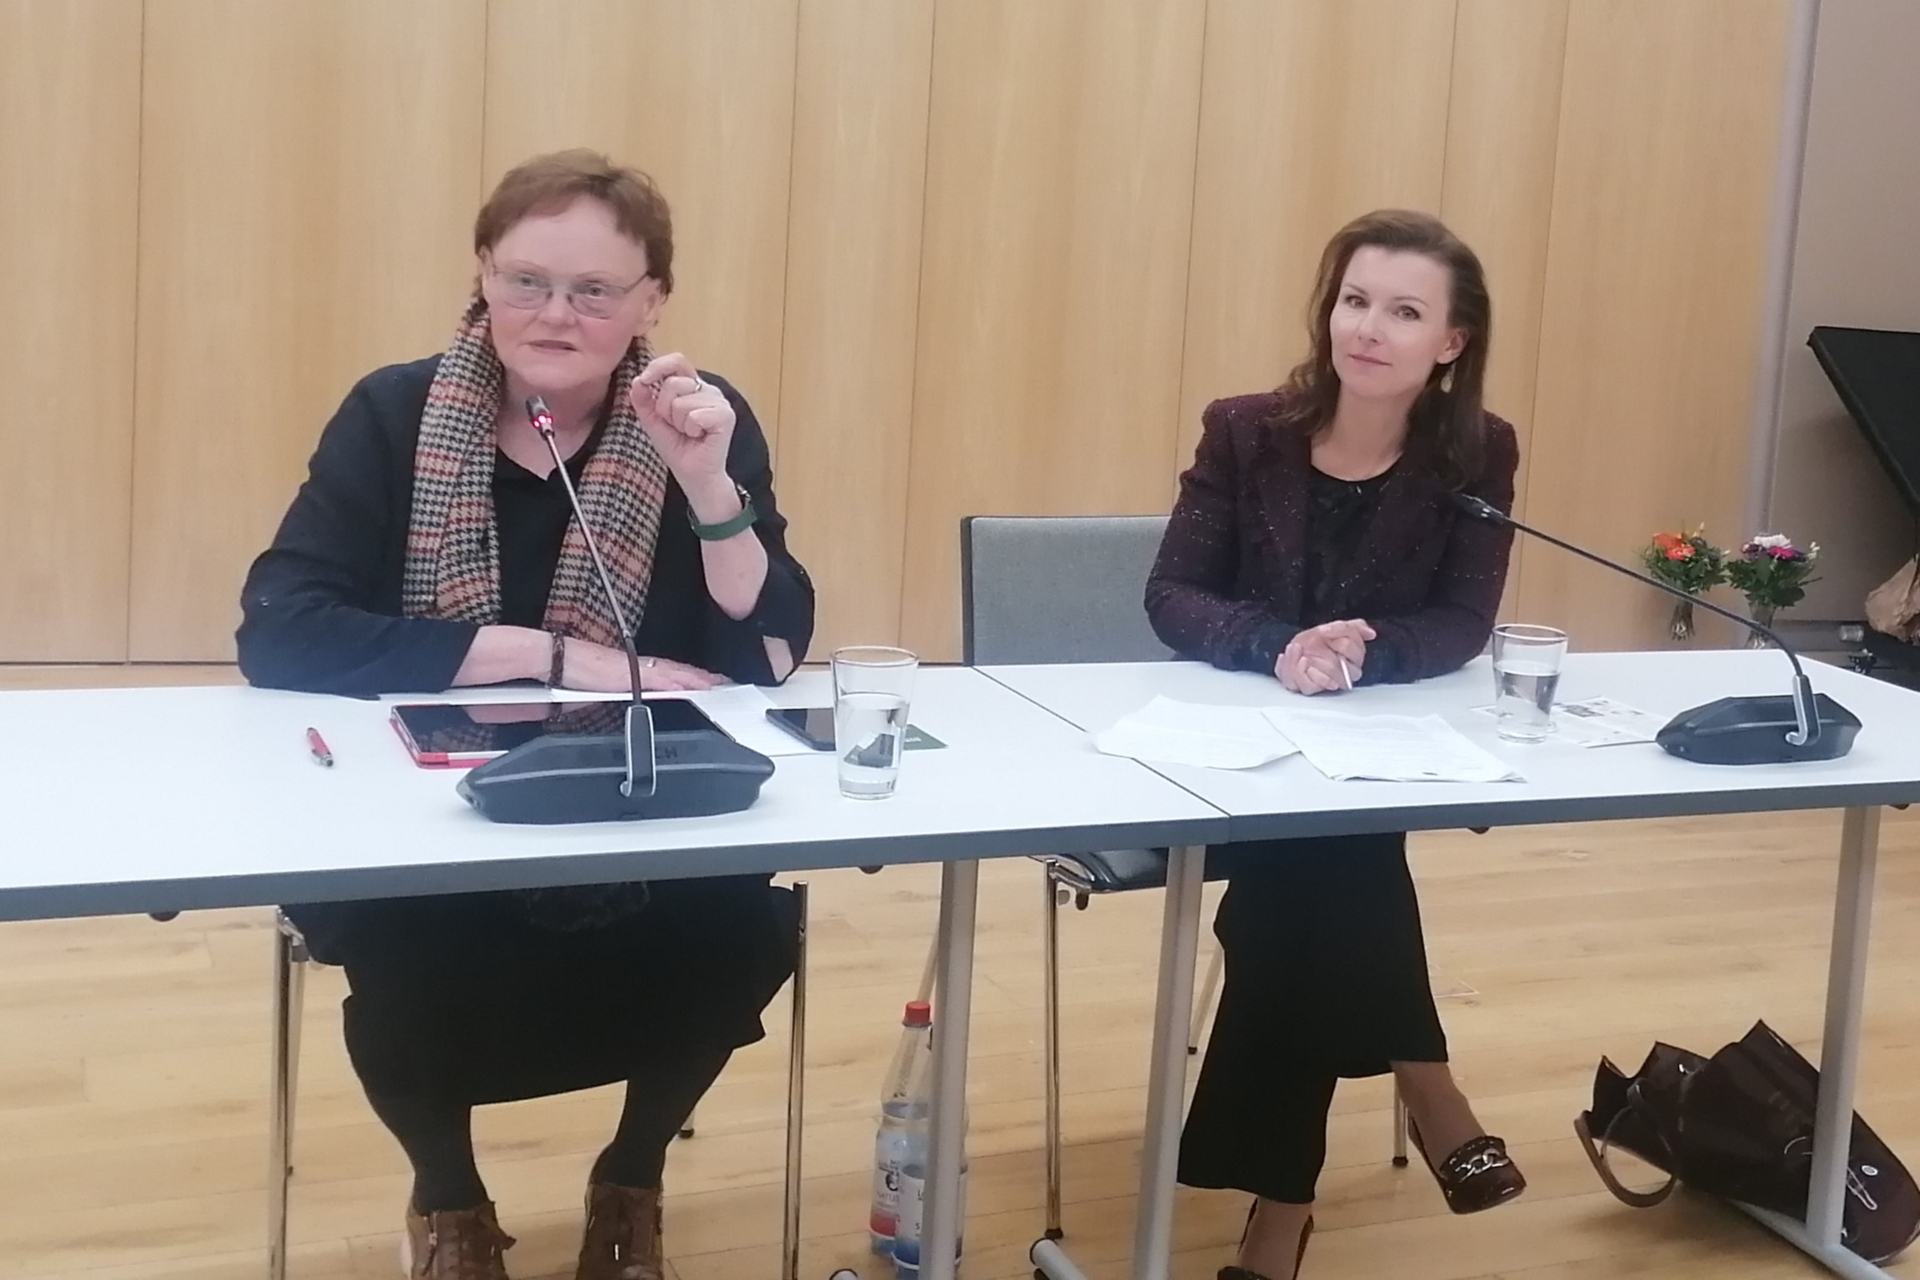 Sylvia Lehmann (l.) und Jana Schimke bei der Veranstaltung der Bürgerstiftung im Rathaussaal Königs Wusterhausen. Foto: Dörthe Ziemer